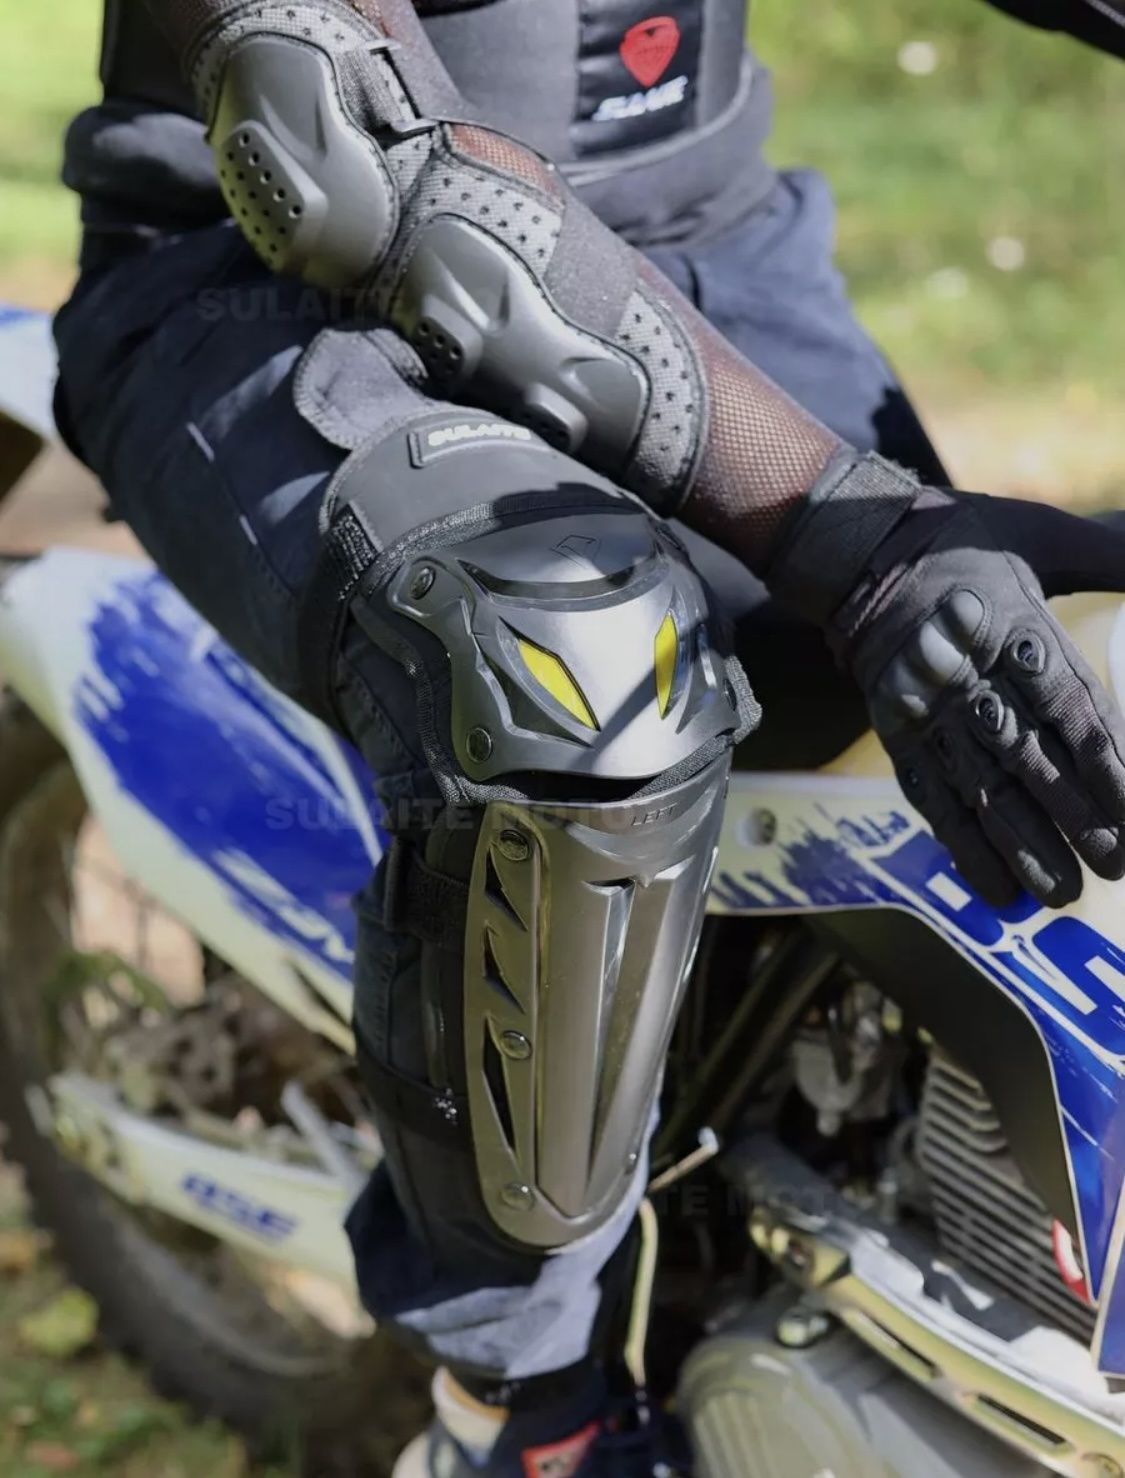 Экипировка для мотоцикла, мото защита для колен и локтей. Эндуро
Sulai